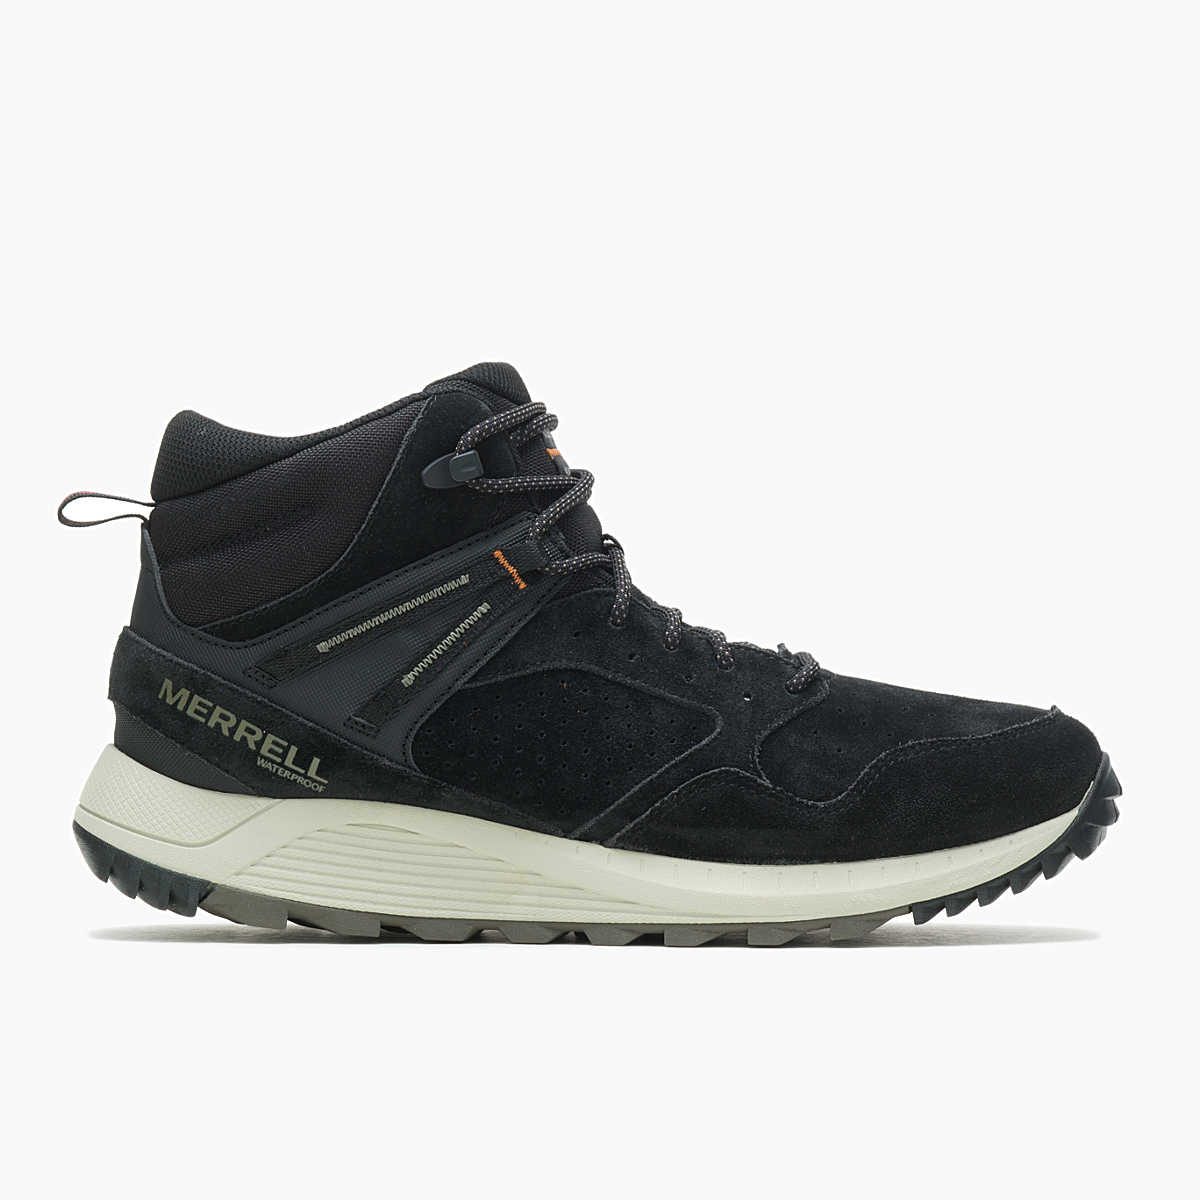 Wildwood Sneaker Boot Mid Waterproof, Black, dynamic 1